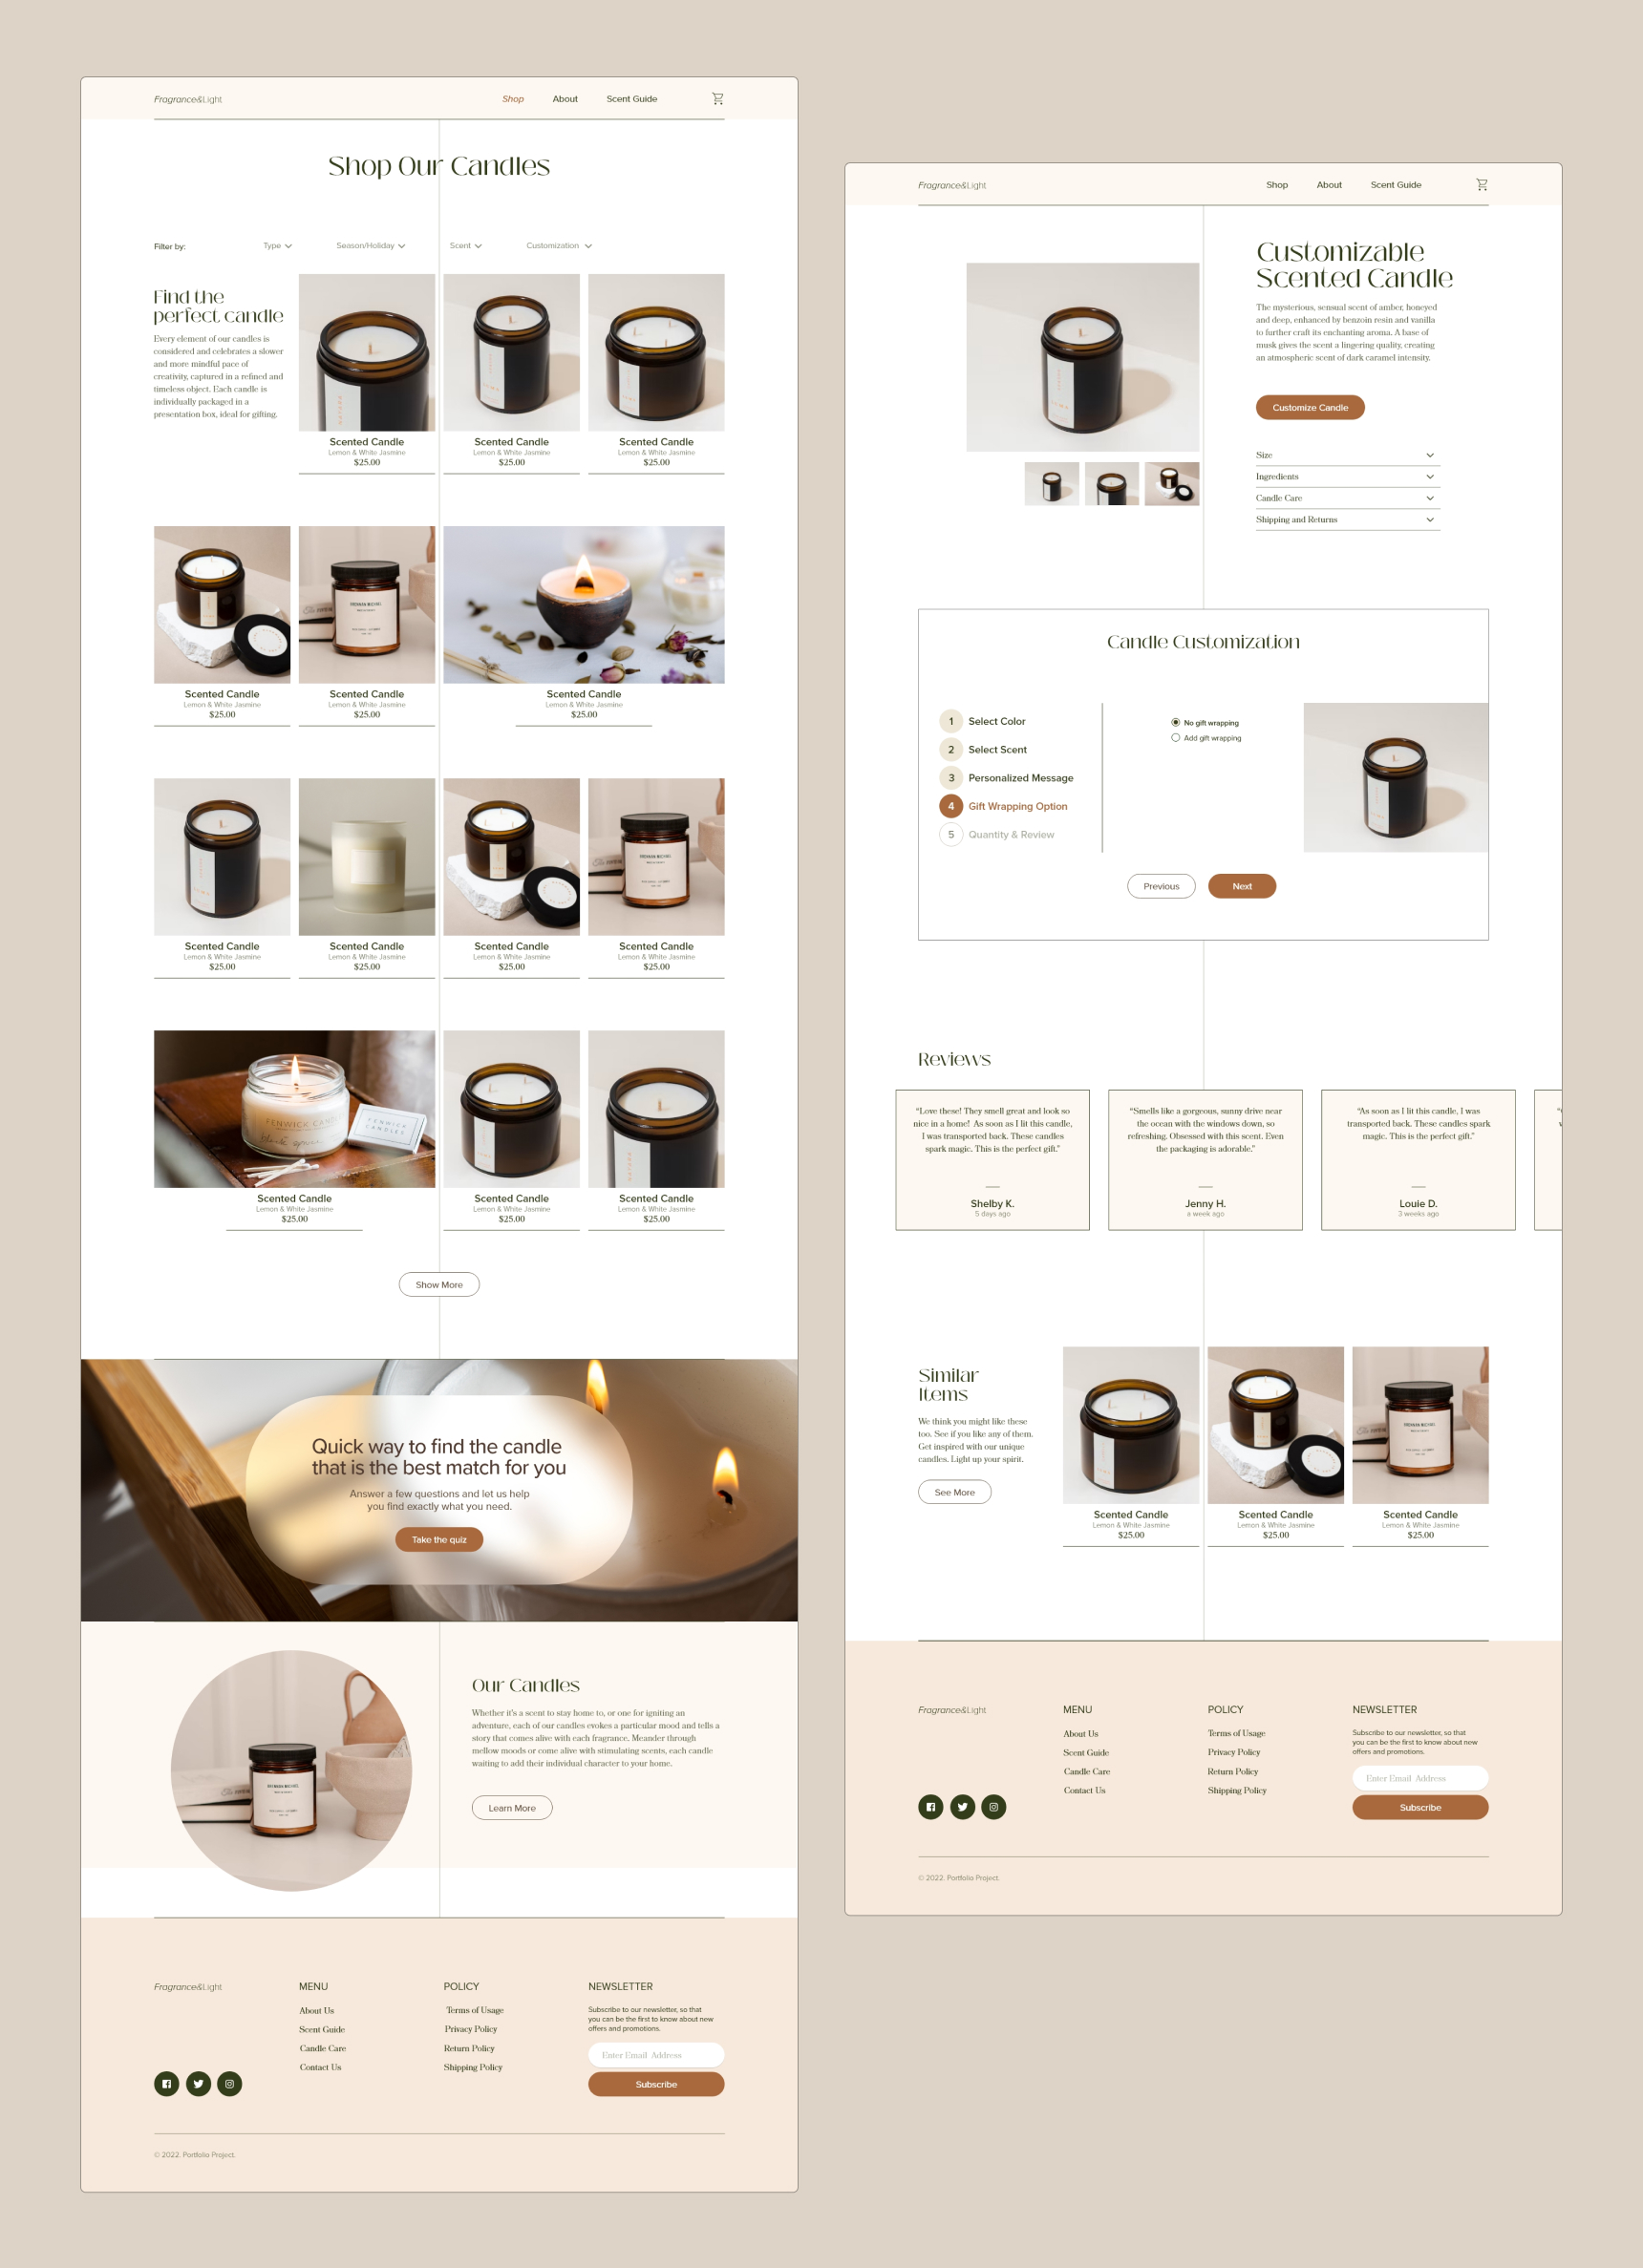 Shop and Product Details pages - desktop version